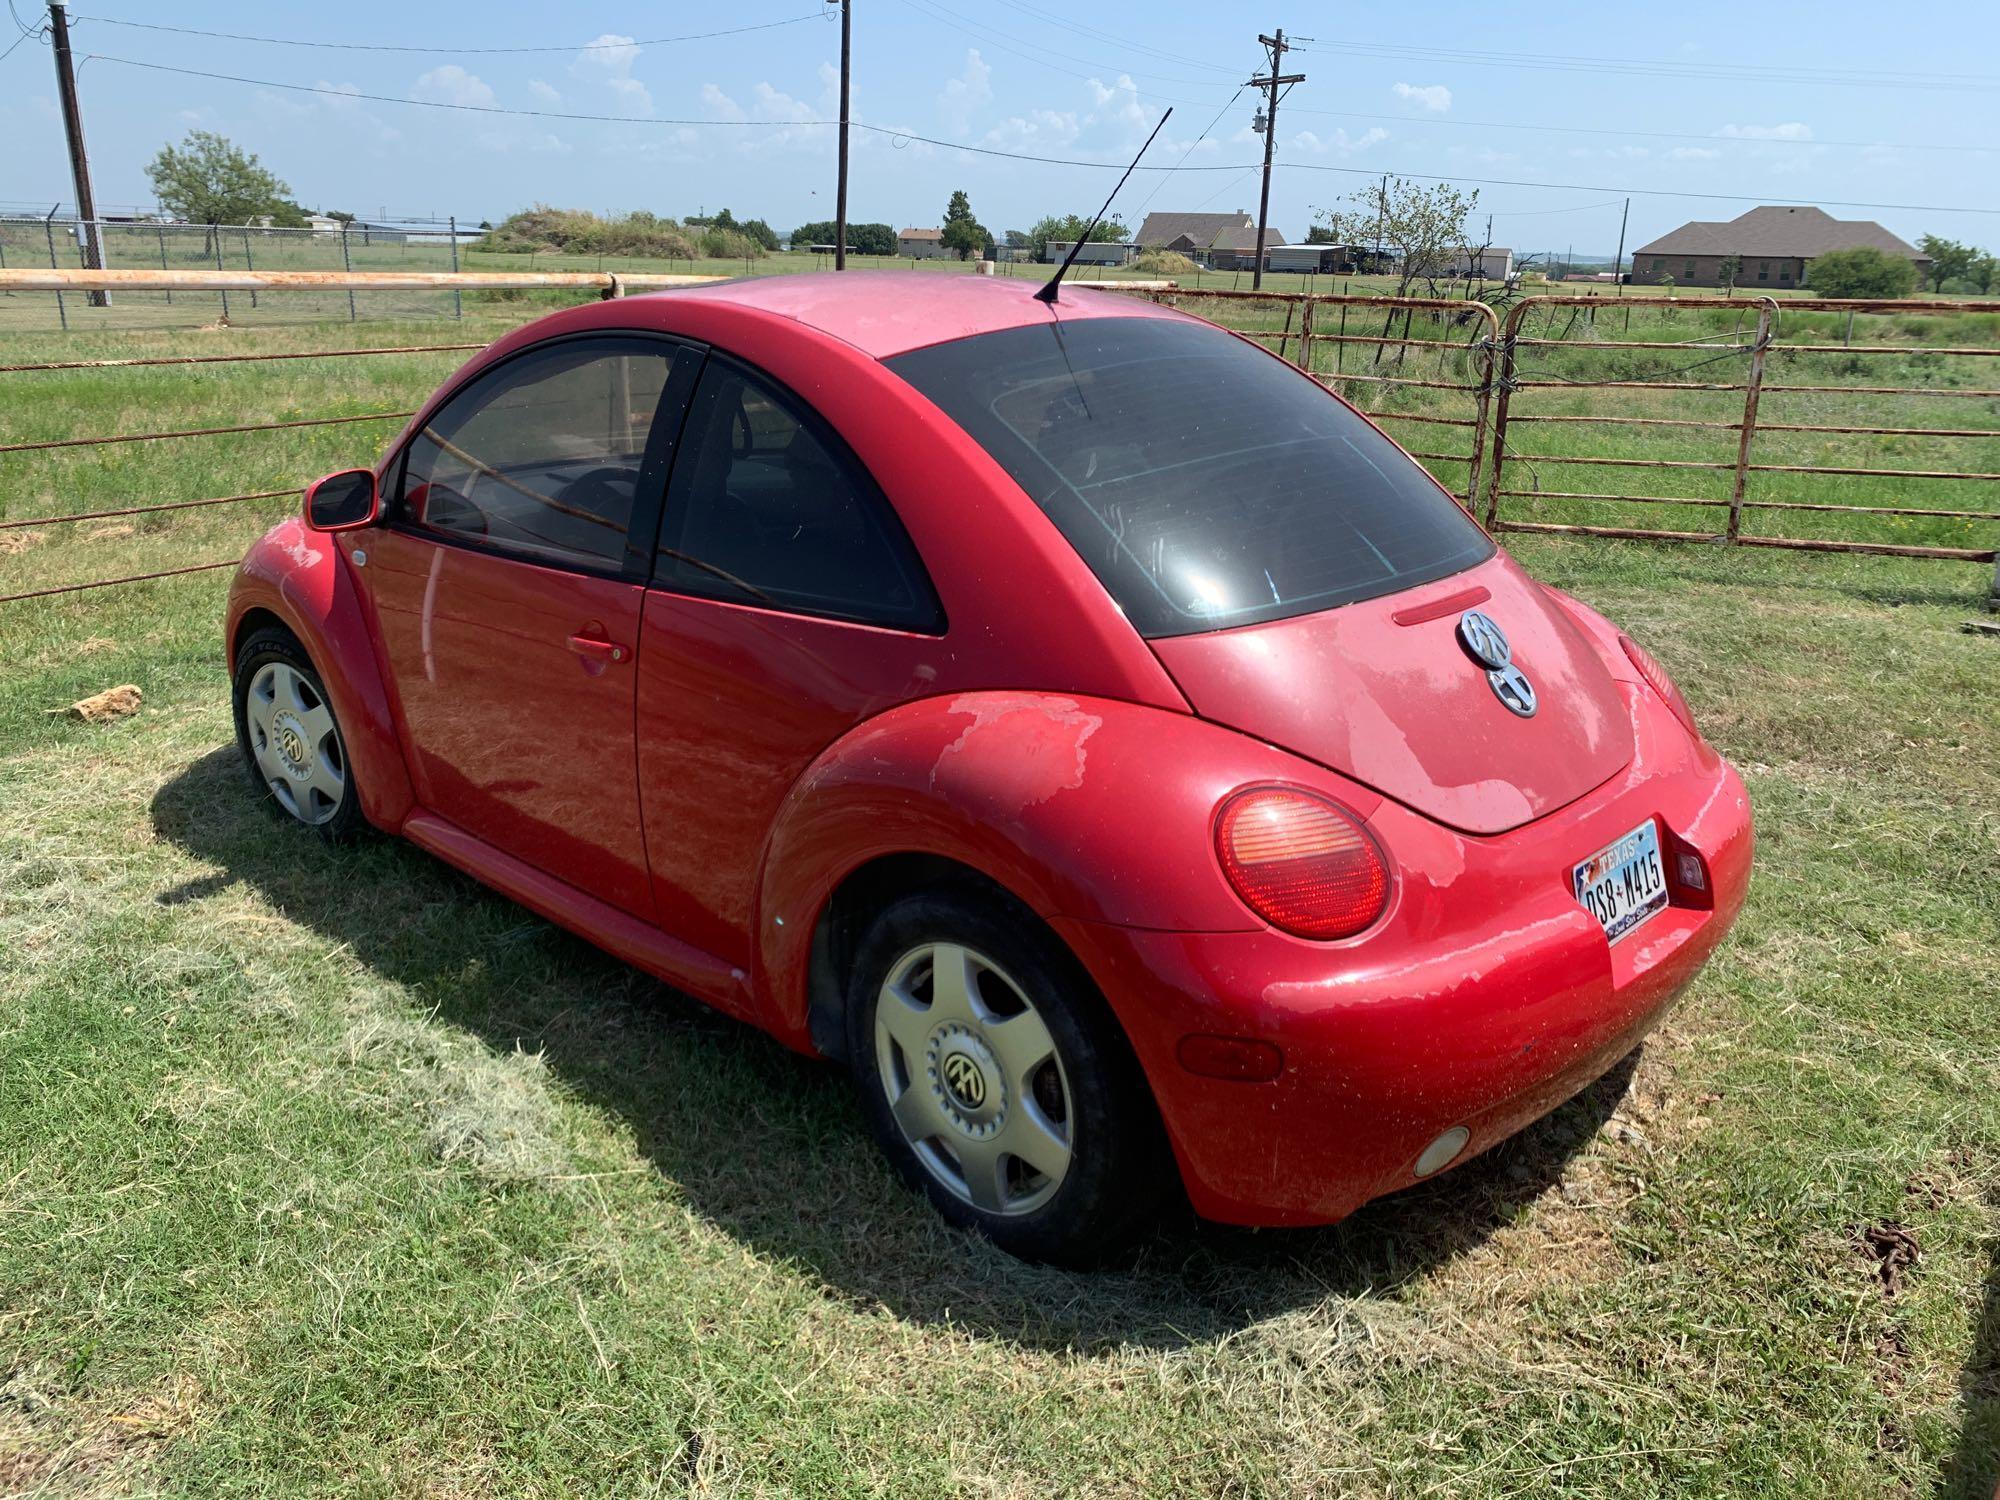 2001 Volkswagen Beetle Coupe